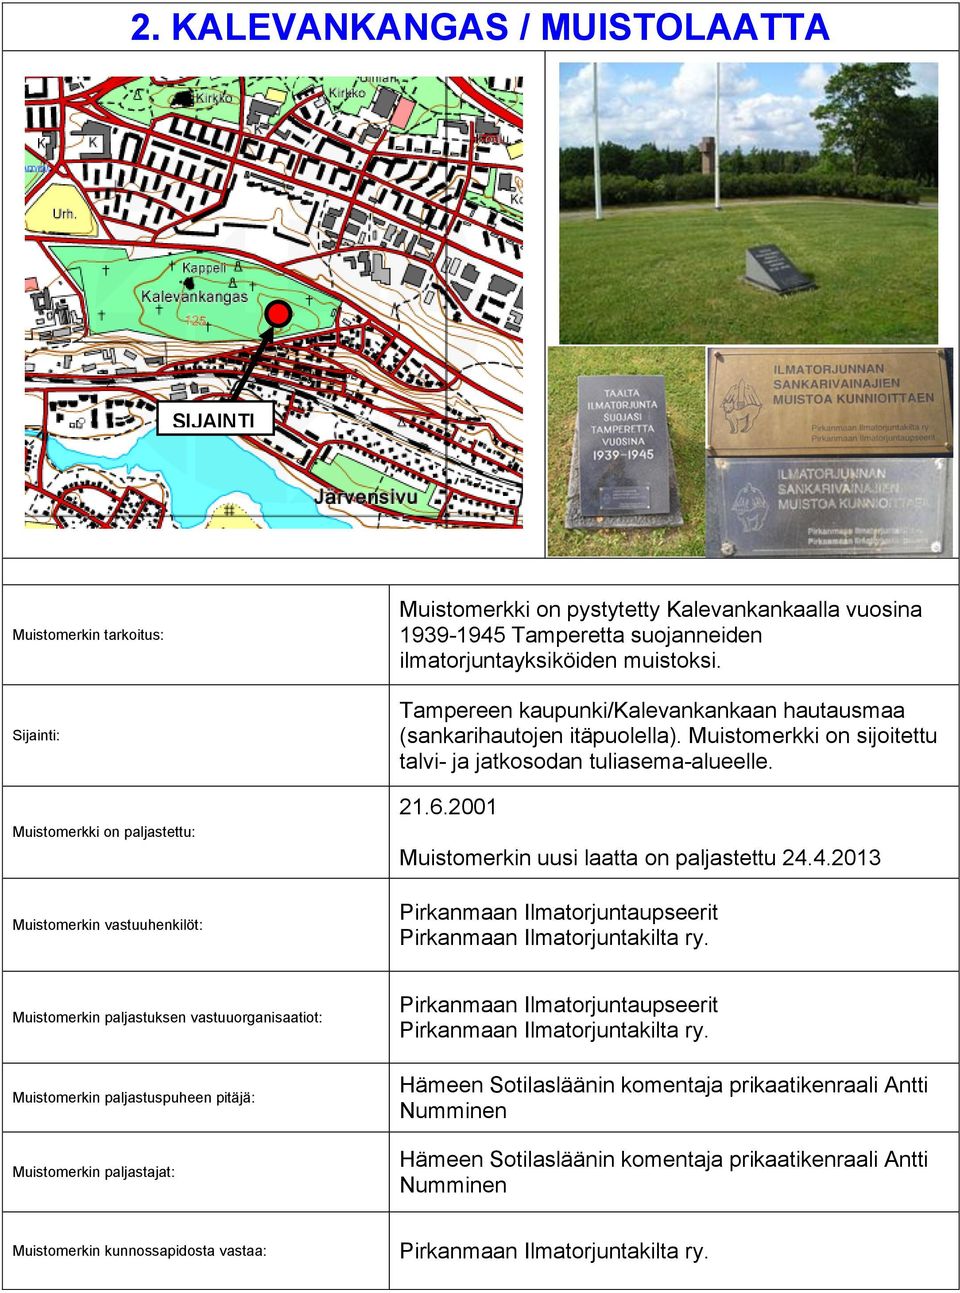 Muistomerkki on sijoitettu talvi- ja jatkosodan tuliasema-alueelle. 21.6.2001 Muistomerkin uusi laatta on paljastettu 24.